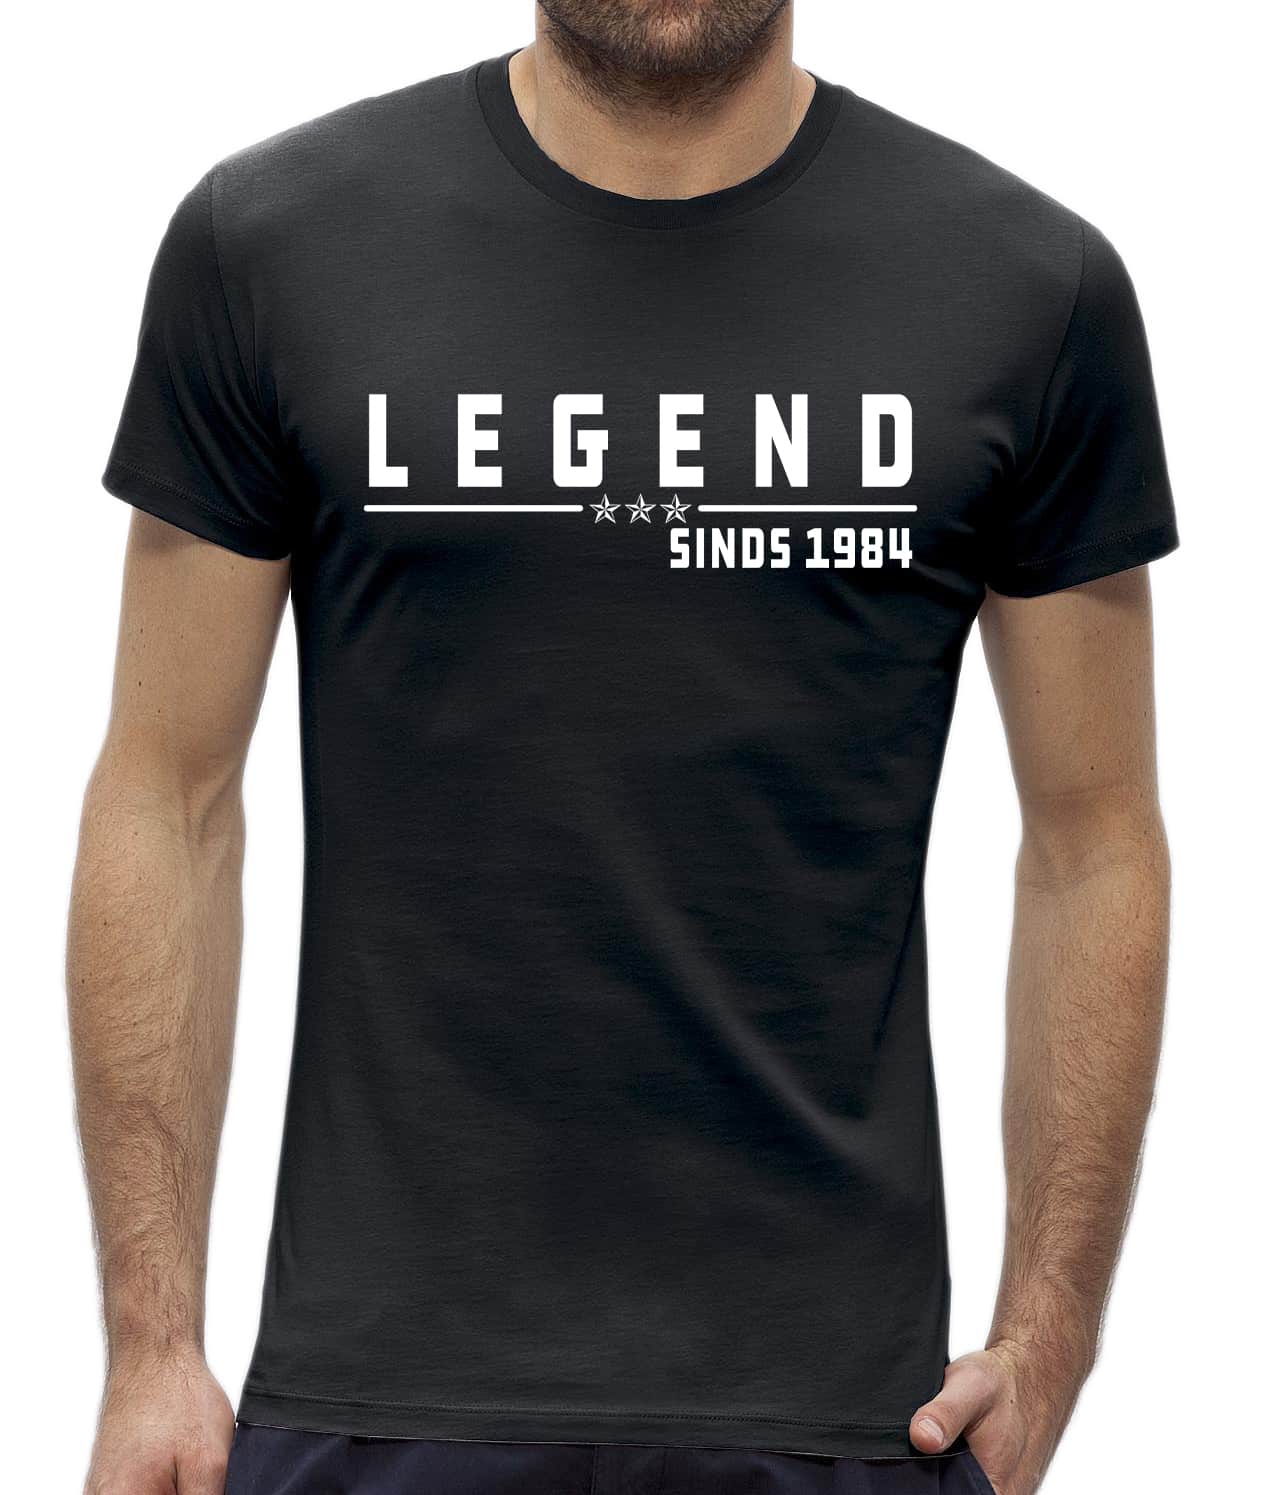 hervorming komedie landinwaarts Legend t-shirt 40 jaar verjaardag man kado - NewYorkFinest